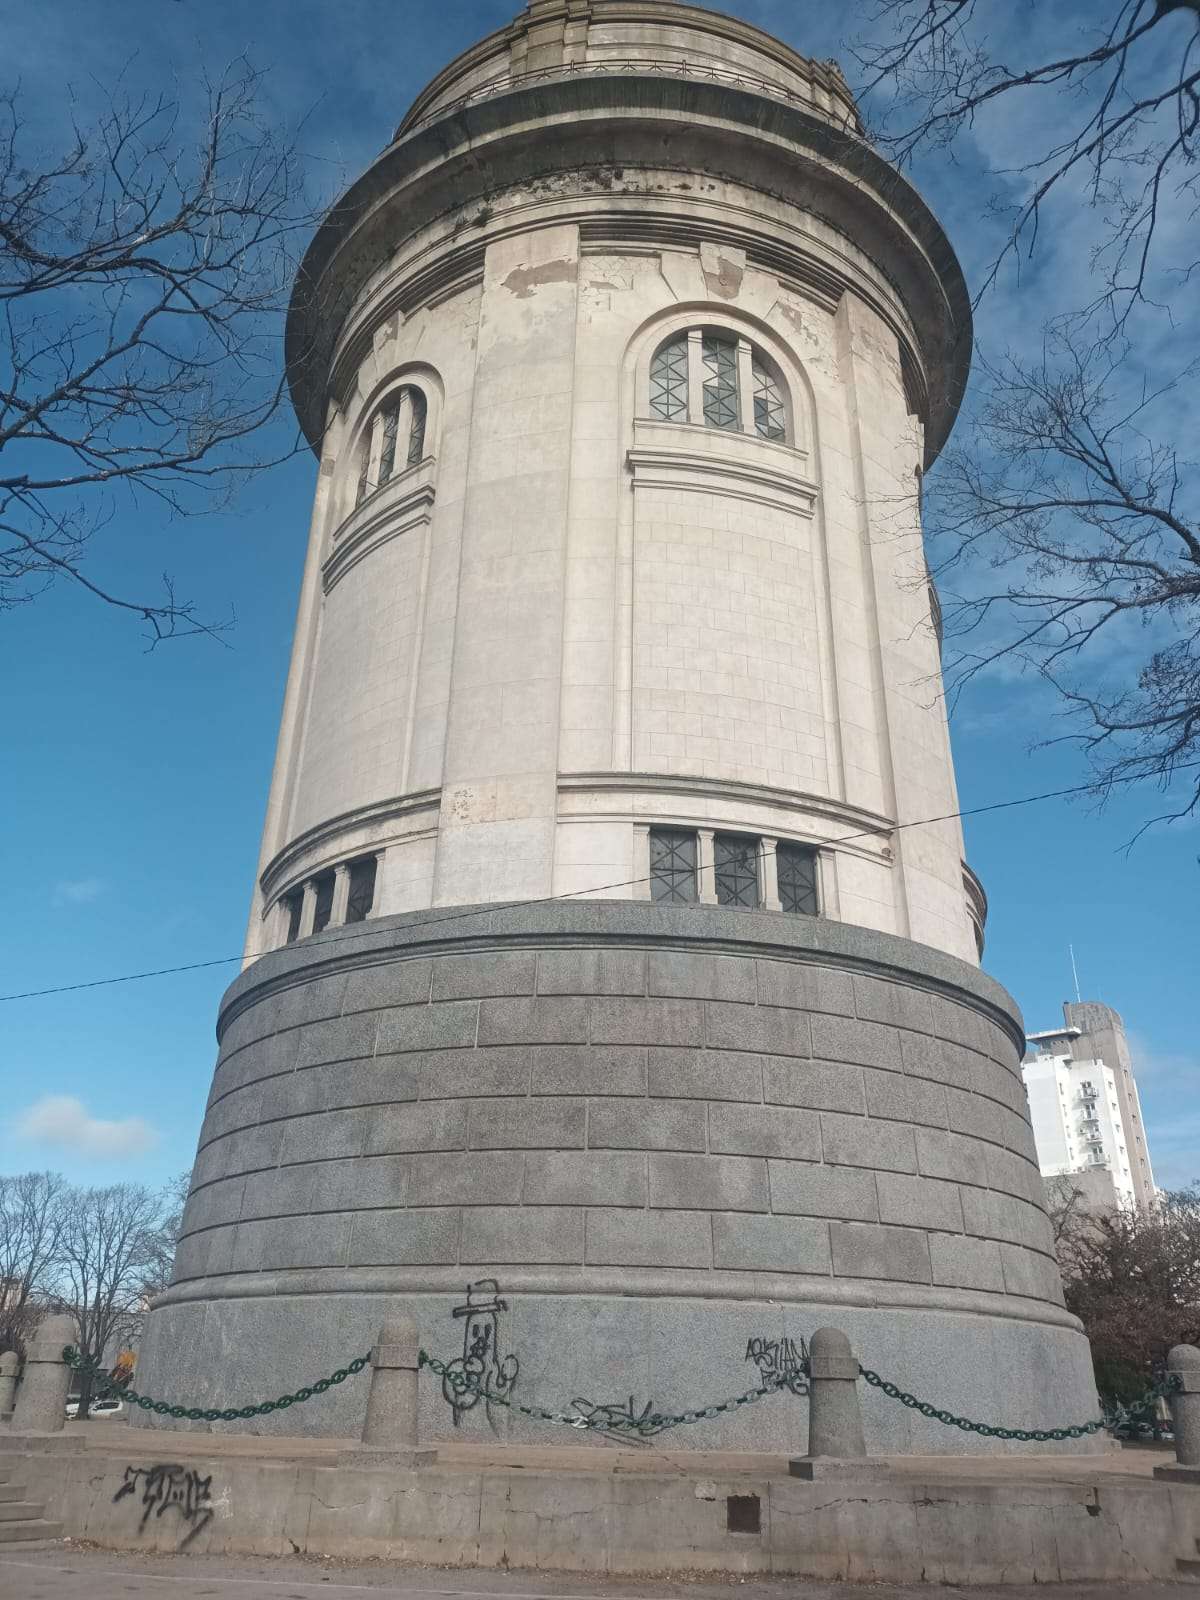 El Tanque de la plaza Rodríguez, un símbolo patrimonial que debería preservarse mejor